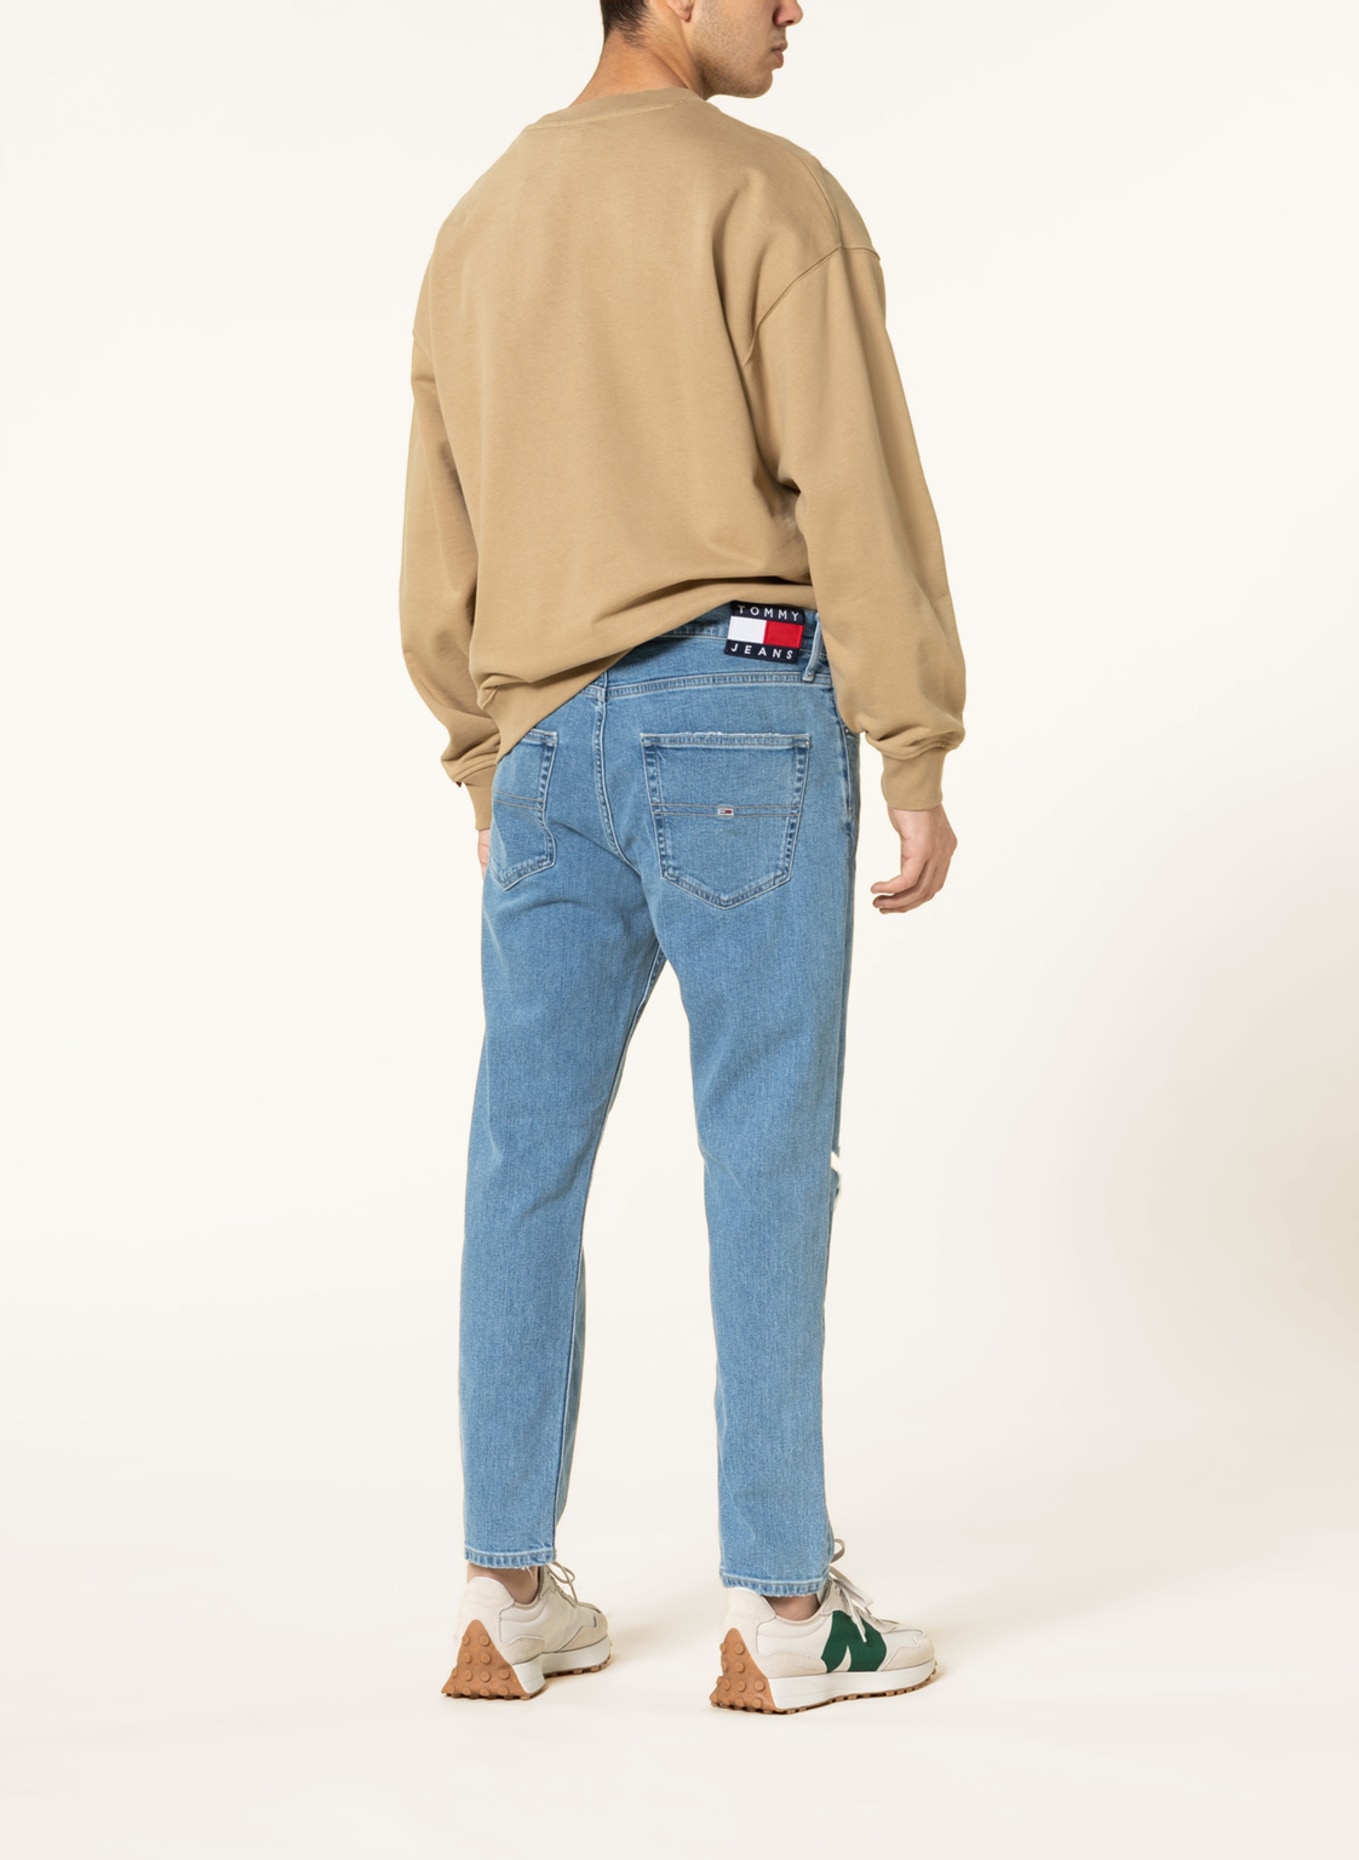 TOMMY JEANS Destroyed jeans DAD JEAN regular tapered fit , Color: 1AB Denim Light (Image 3)